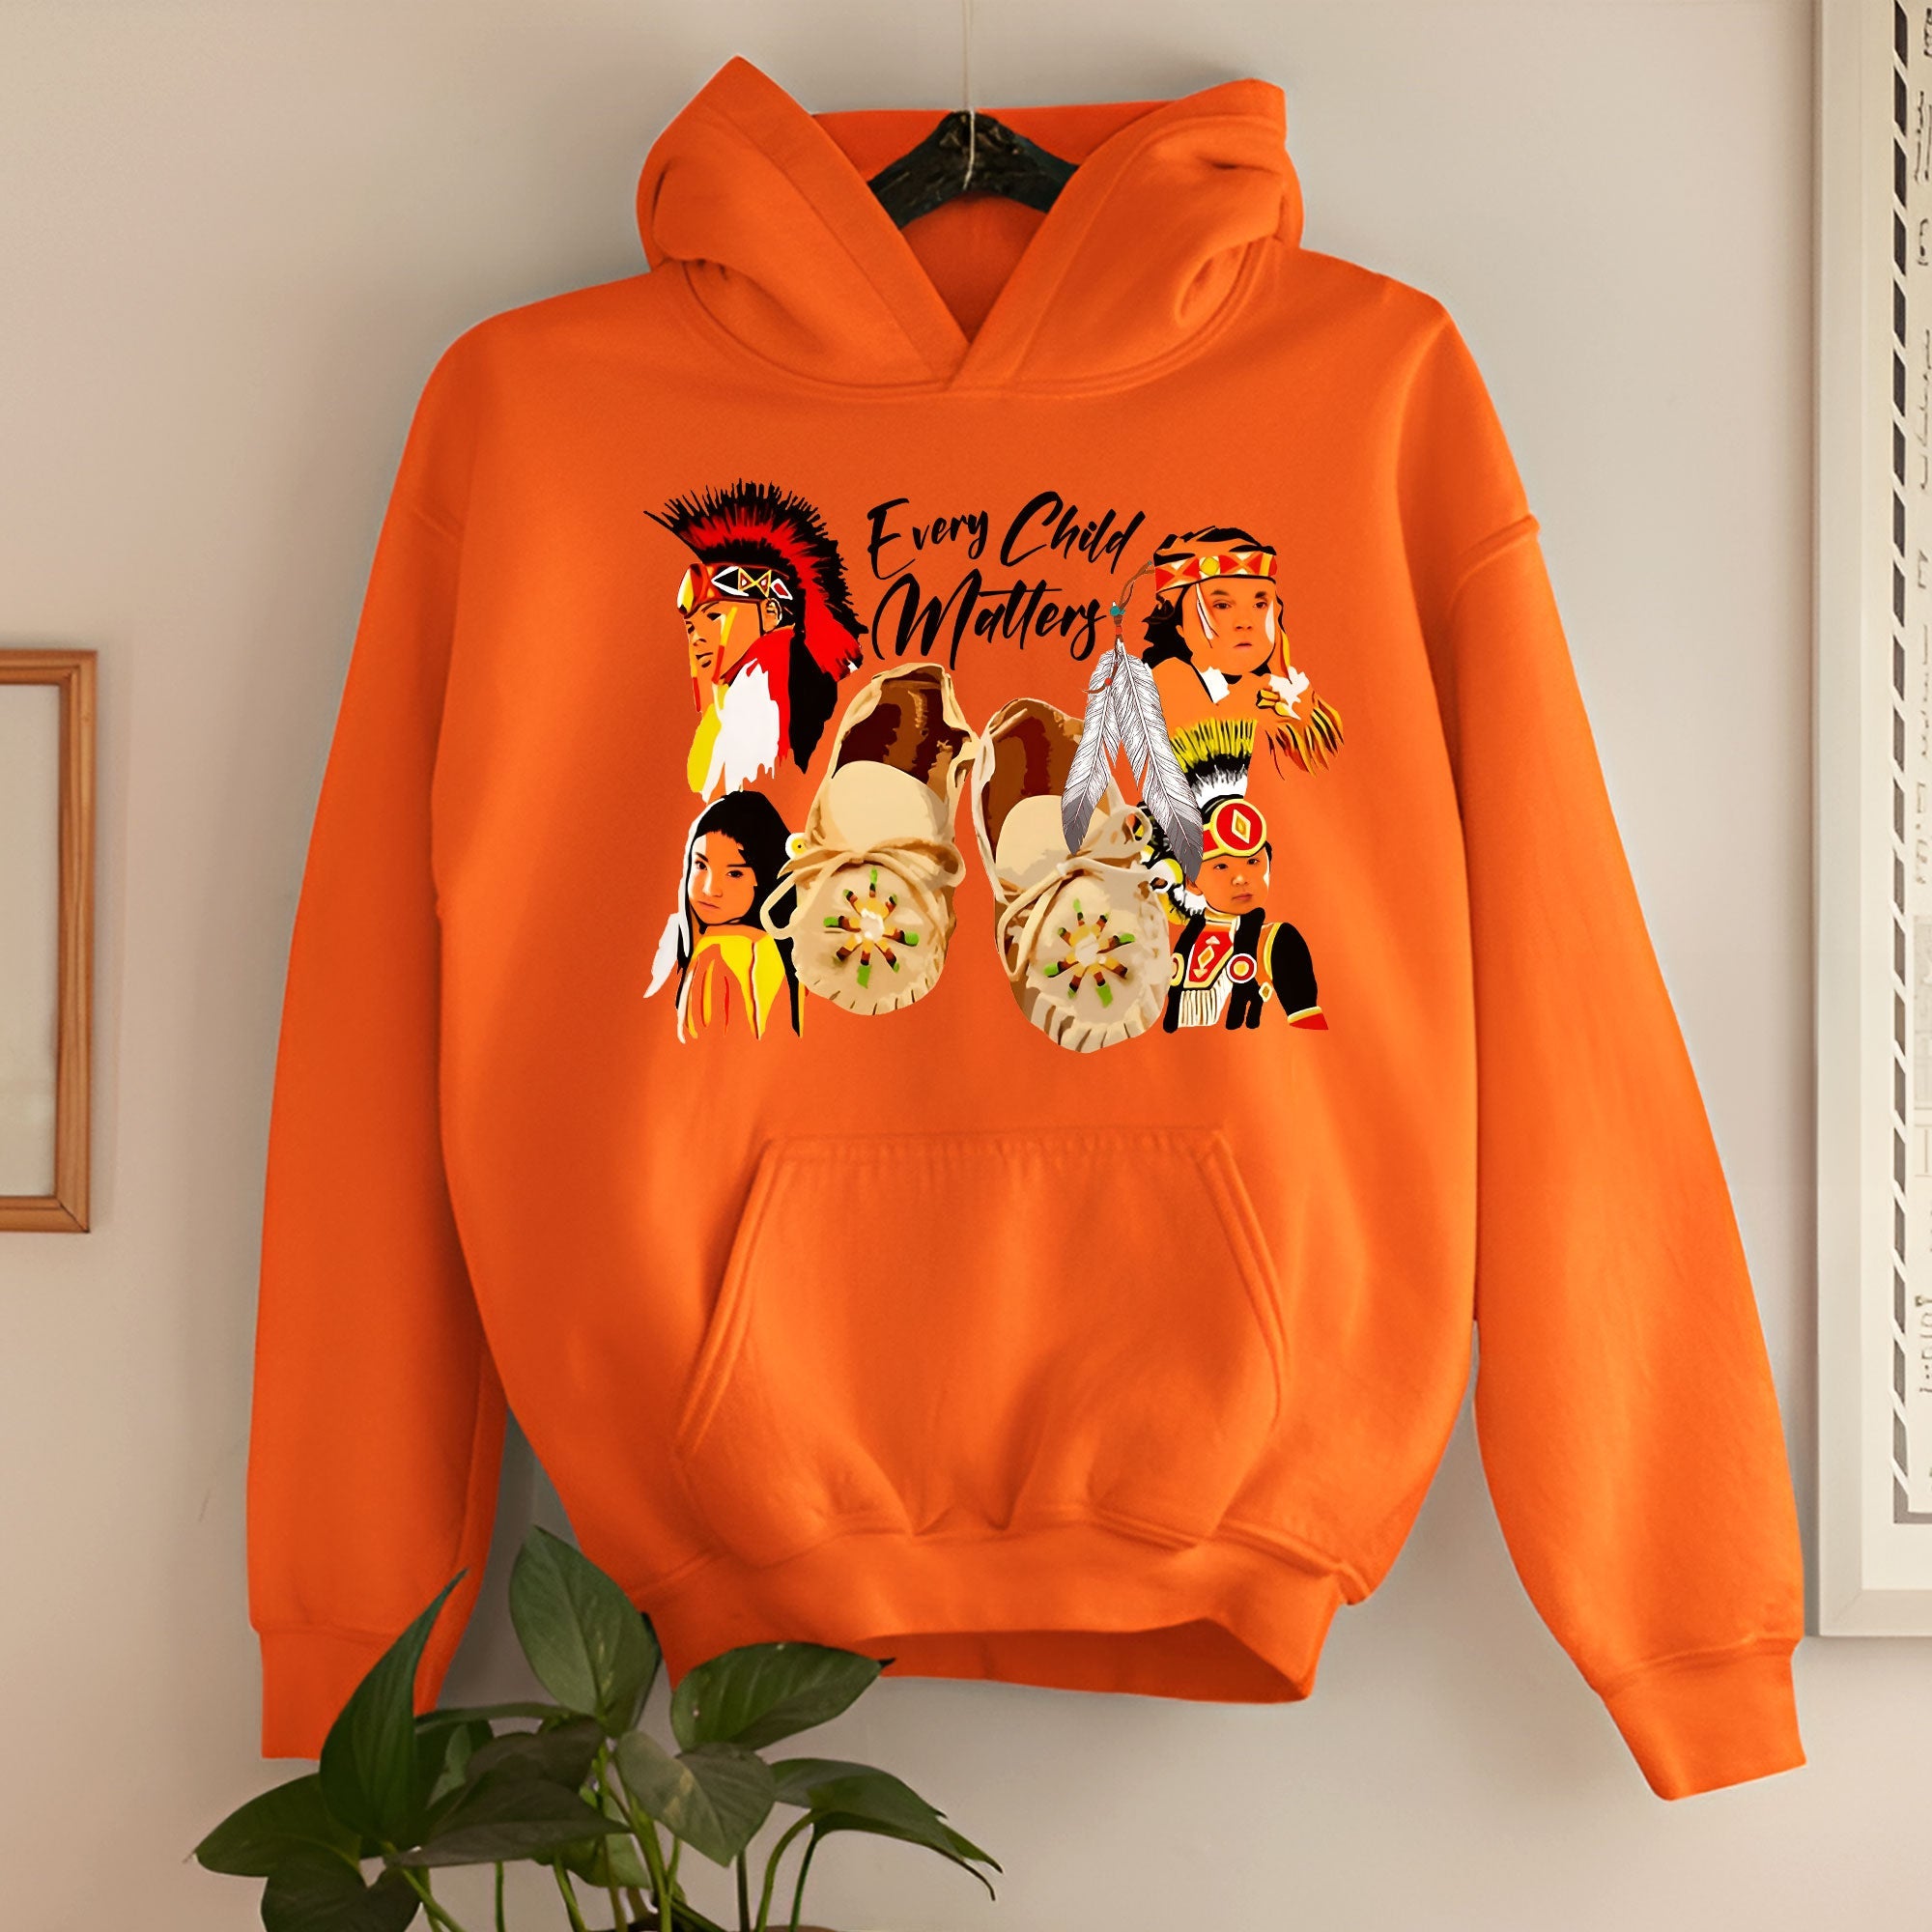 Every Child Matters Orange Shir Unisex T-Shirt/Hoodie/Sweatshirt